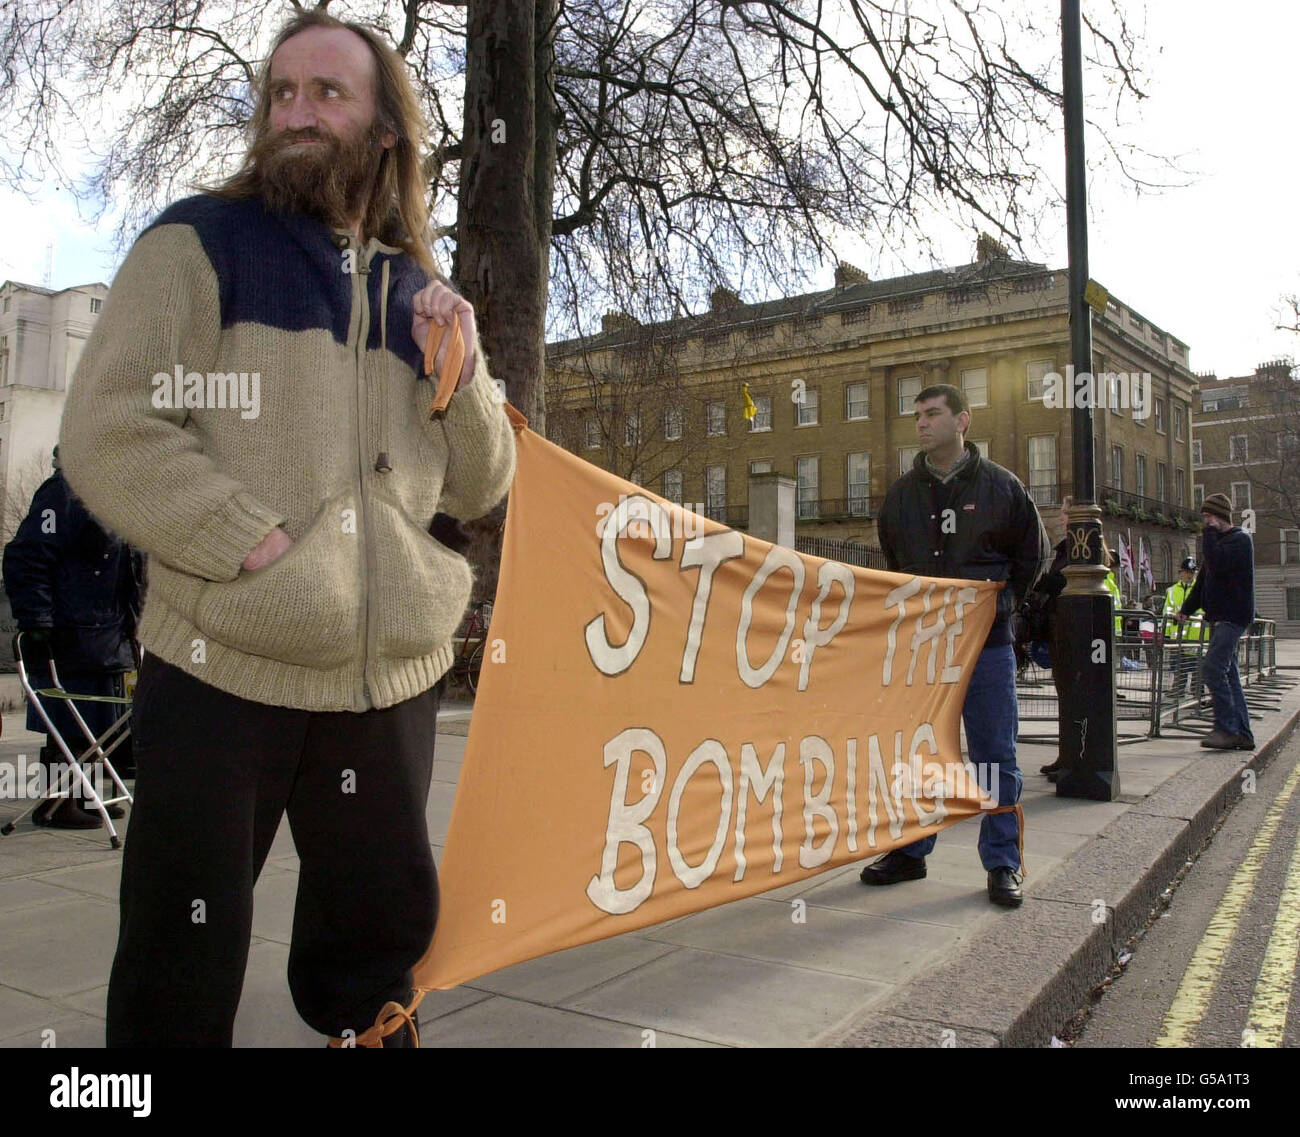 Demonstranten protestieren mit einem Transparent mit der Aufschrift "Stoppen Sie die Bombardierung" gegen die jüngsten Luftangriffe im Irak, indem sie ihre Kampagne nach Whitehall in London brachten, wo sie gegenüber den Toren der Downing Street protestierten. Stockfoto